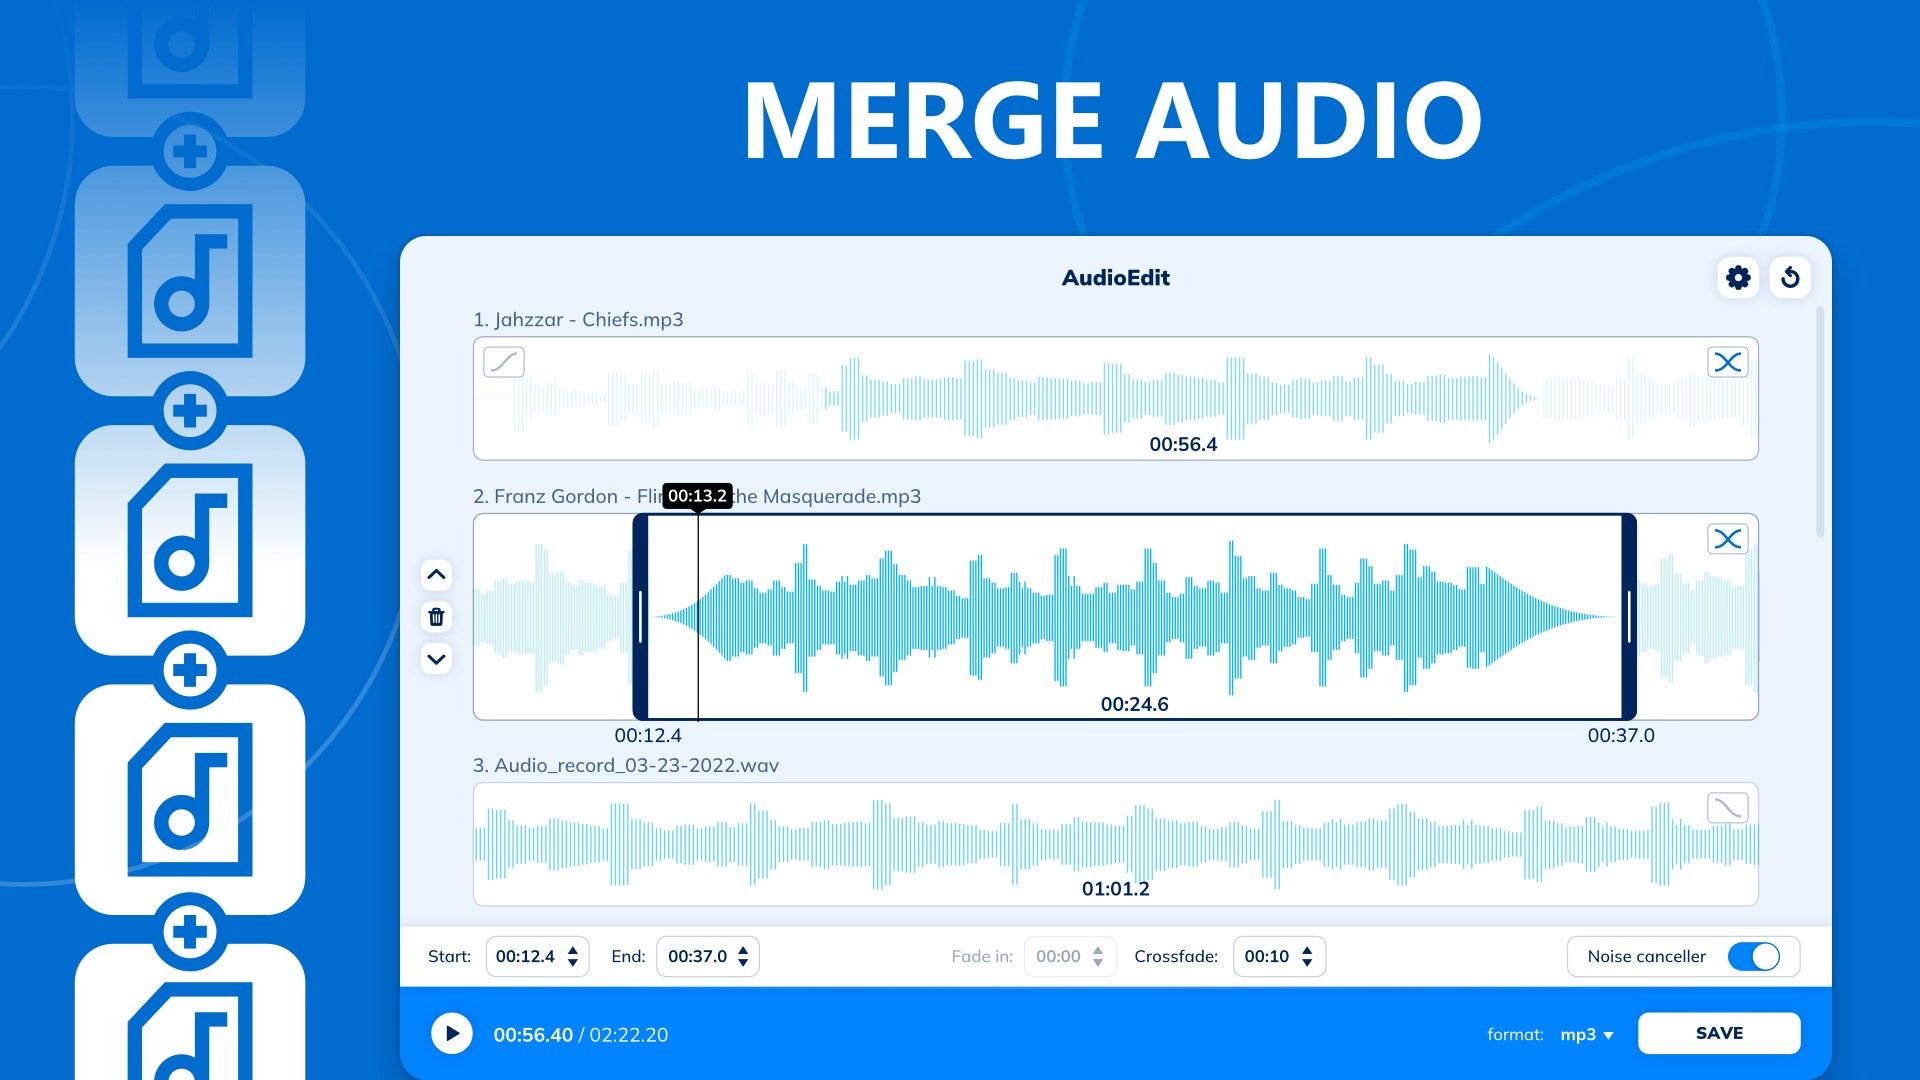 AUDIOEDIT: Audio Editing Tool